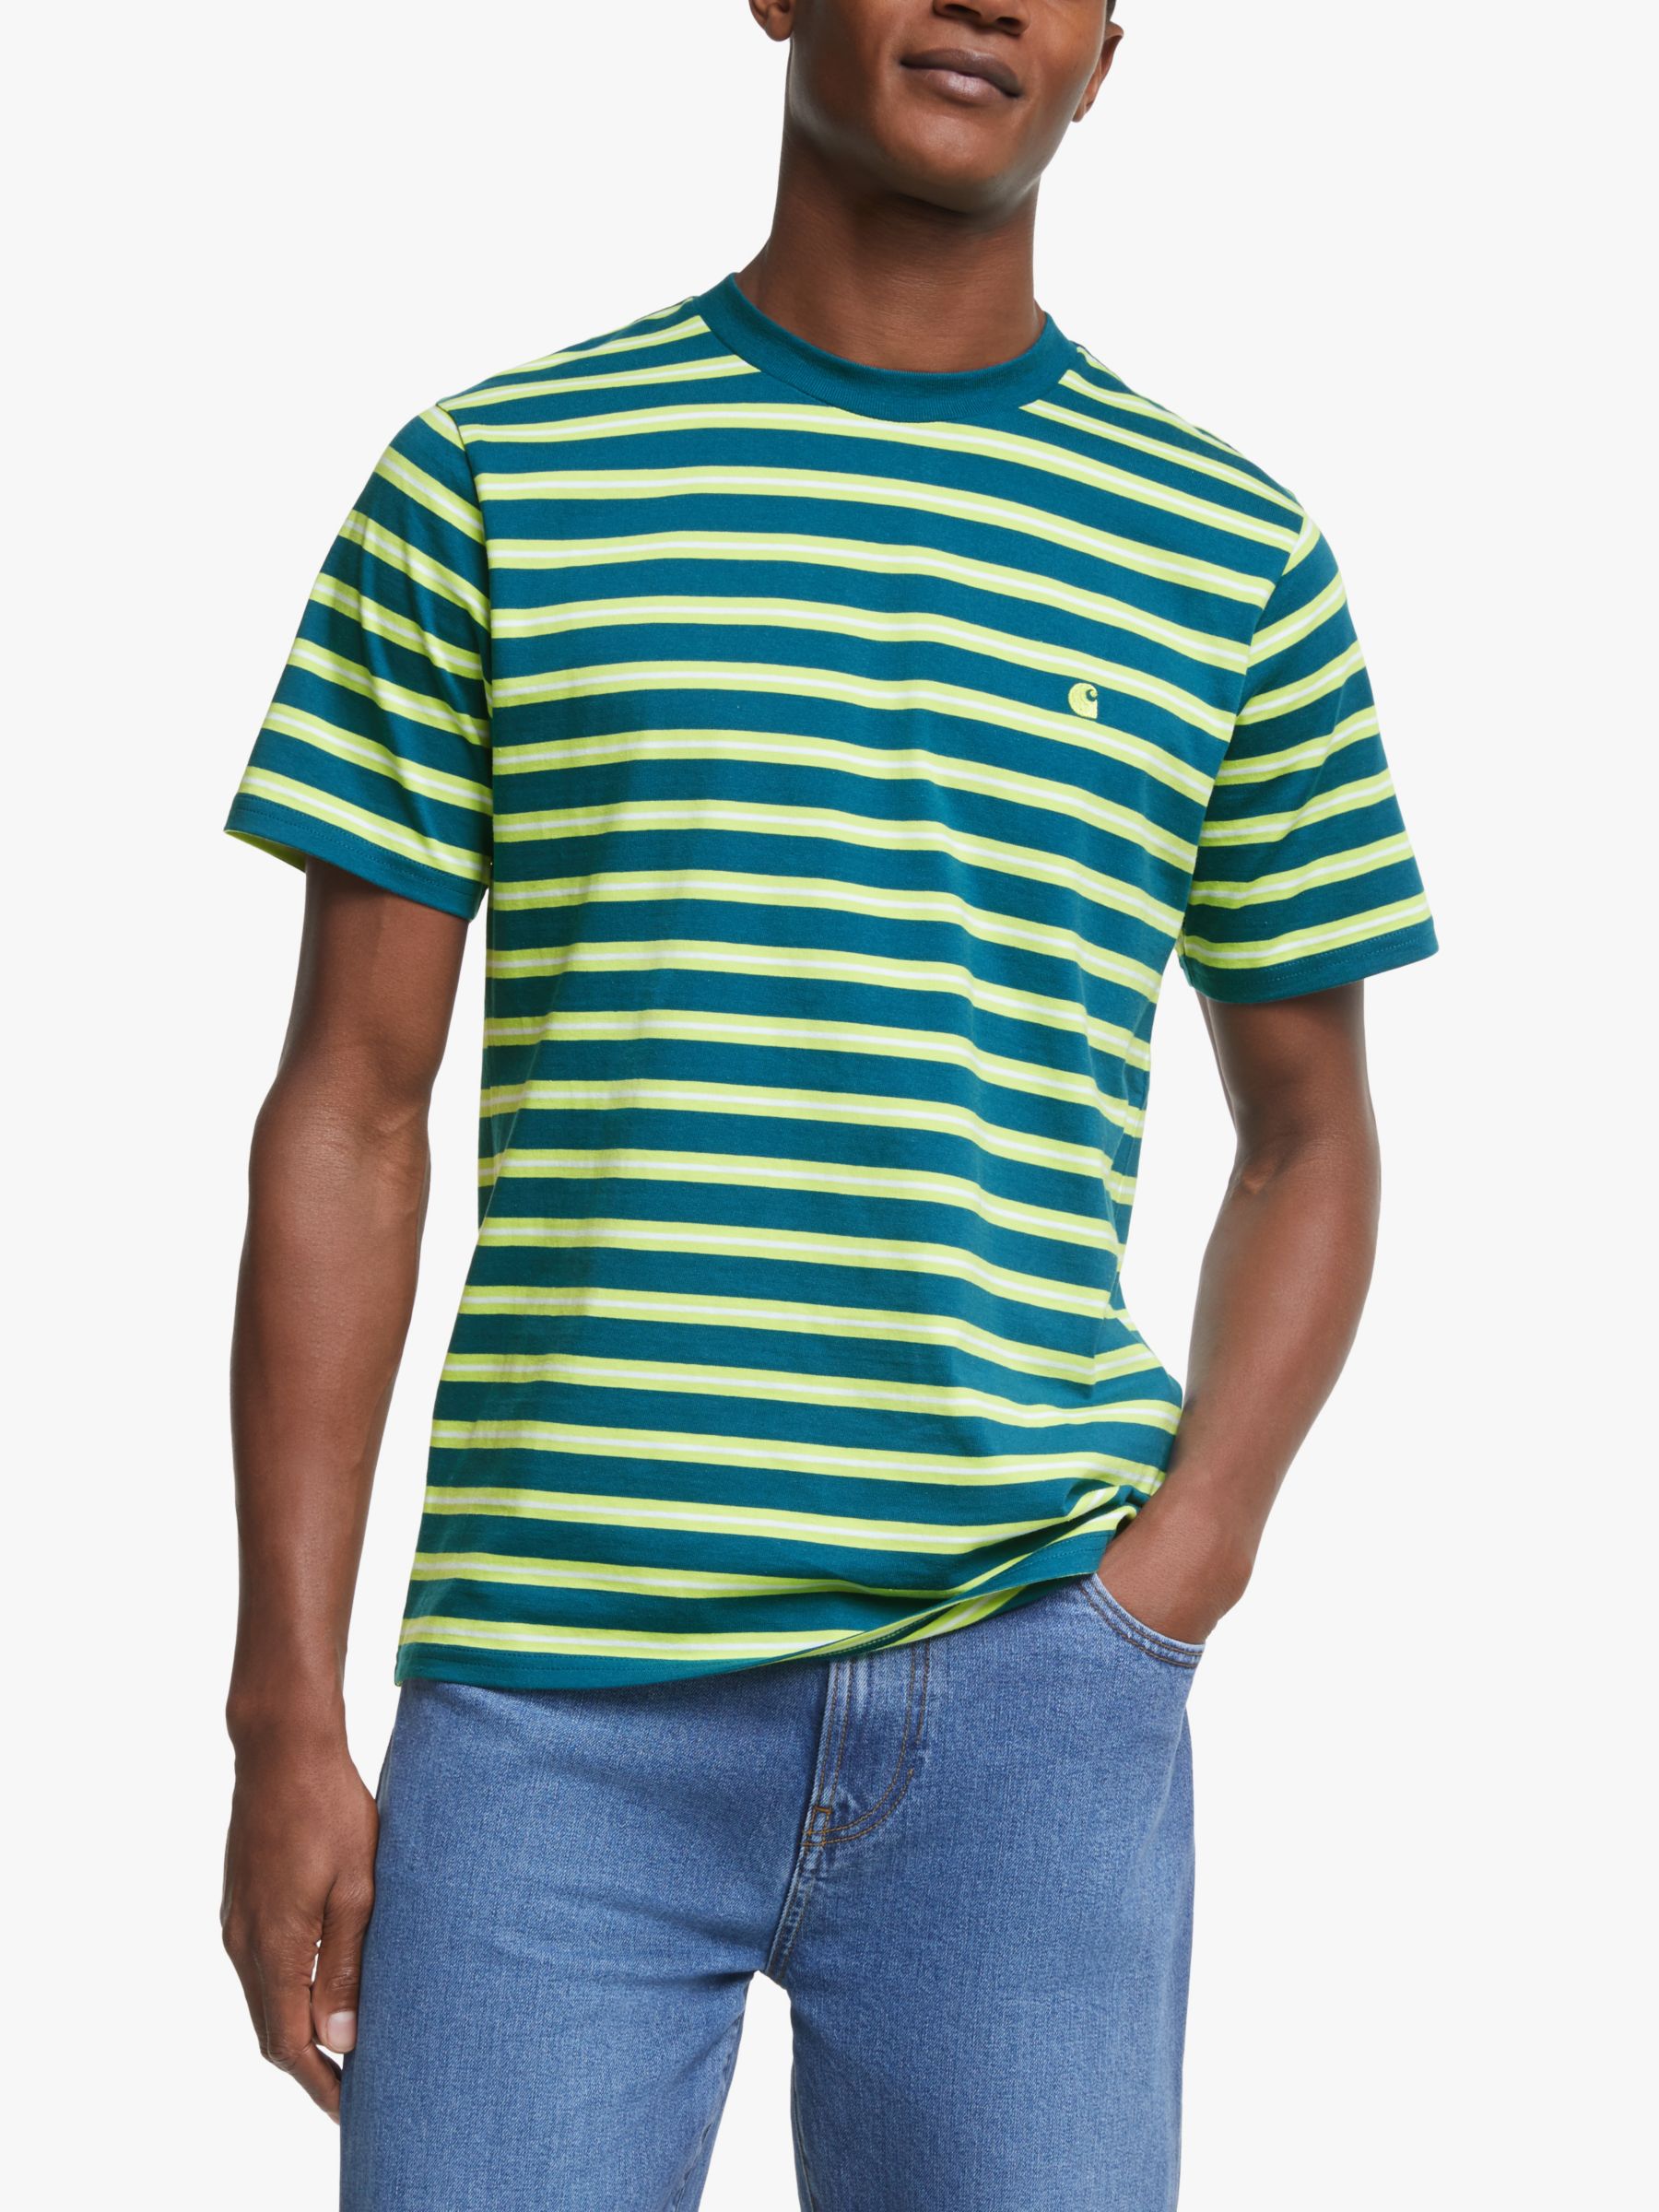 Carhartt Blue Striped Shirt Deals, 59% OFF | campingcanyelles.com